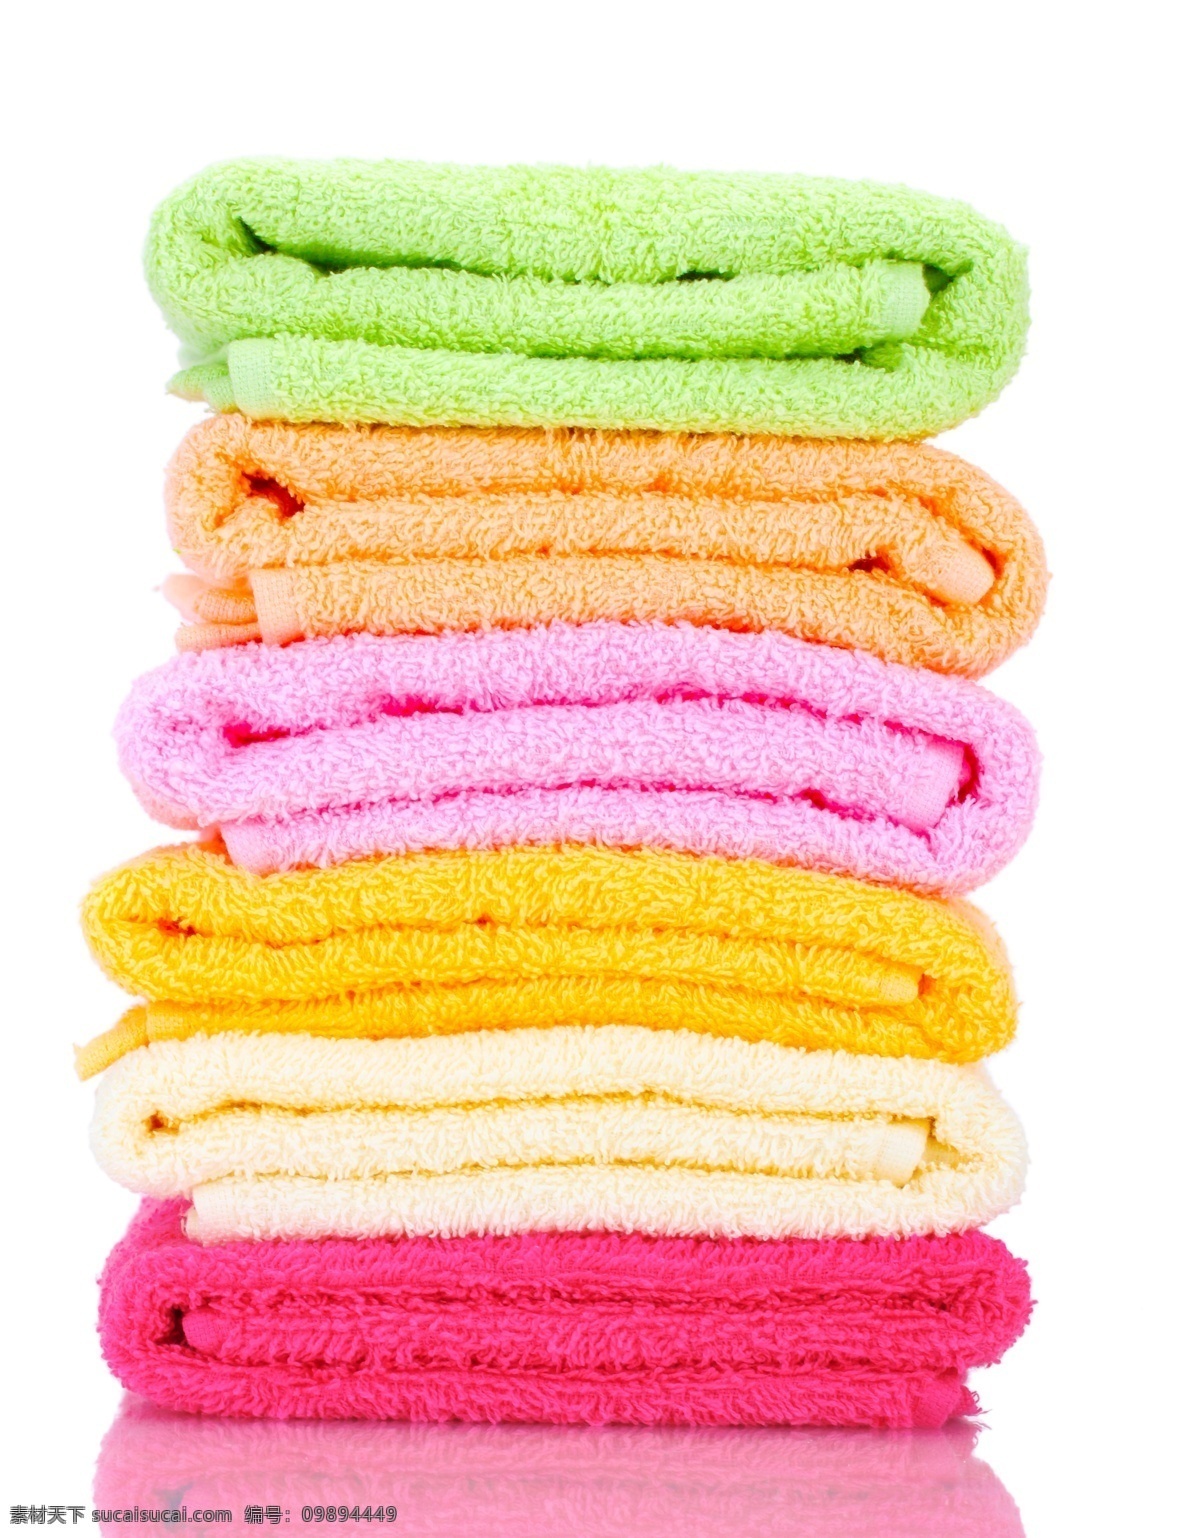 叠放 整齐 毛巾 毛纺织品 棉织品 家居用品 五颜六色 生活用品 日用品 生活百科